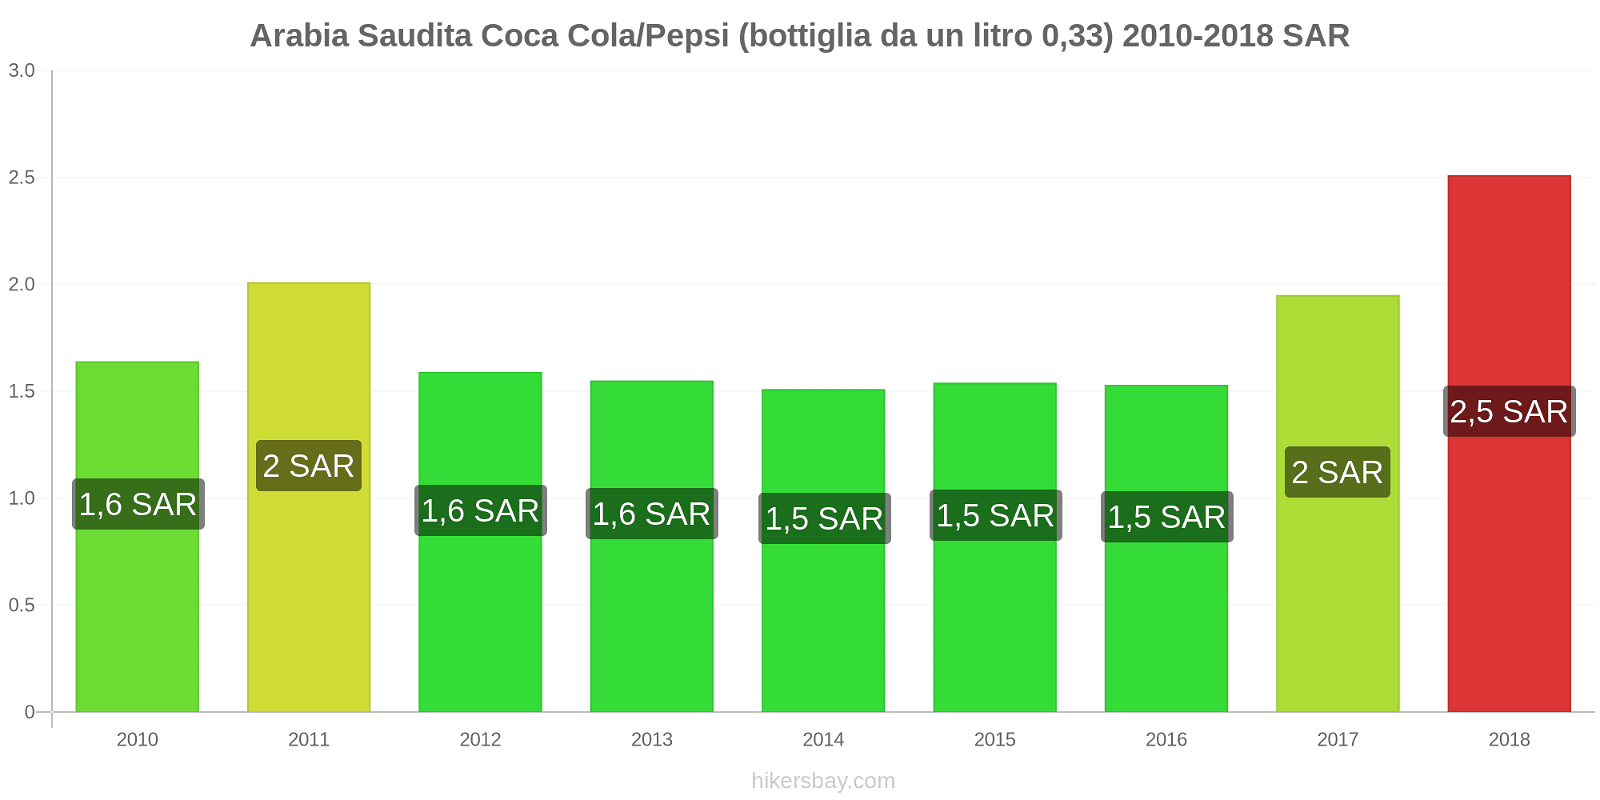 Arabia Saudita cambi di prezzo Coca-Cola/Pepsi (bottiglia da 0.33 litri) hikersbay.com